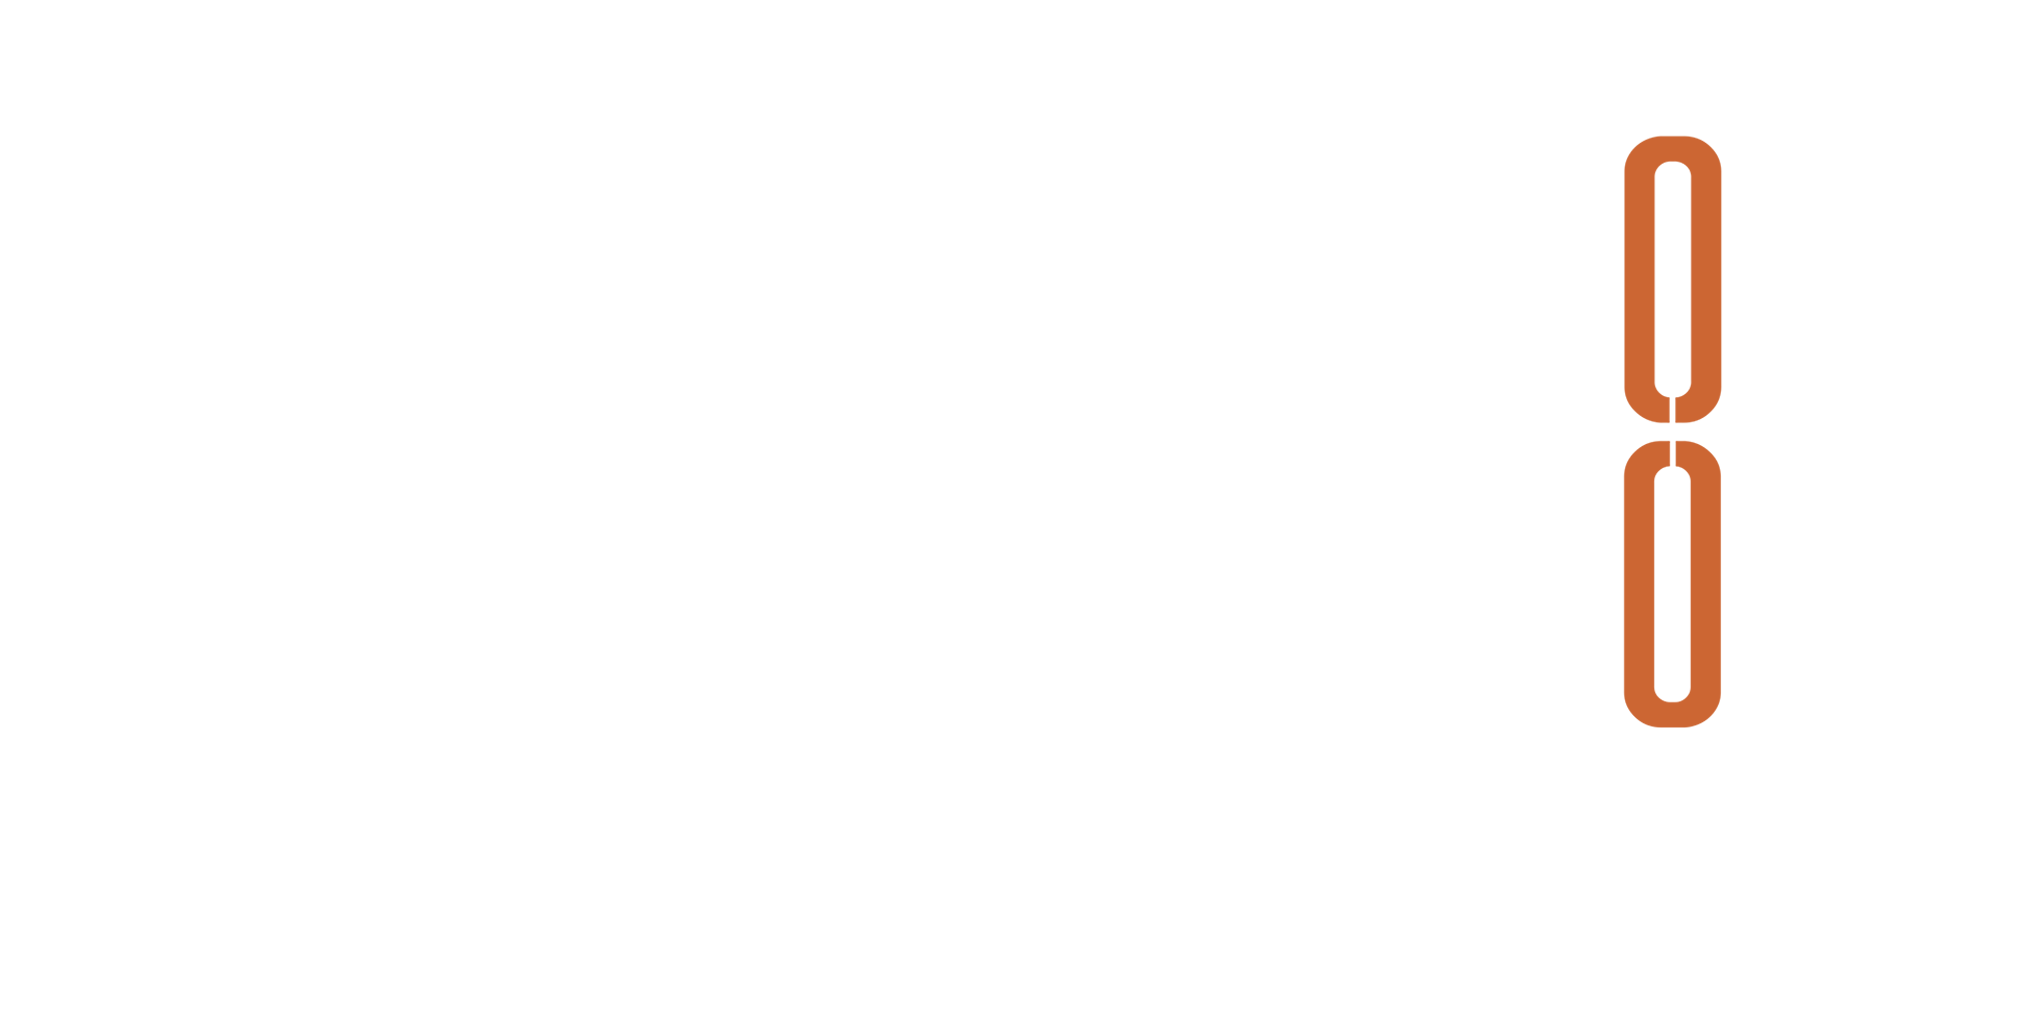 sds-logo_white_orange